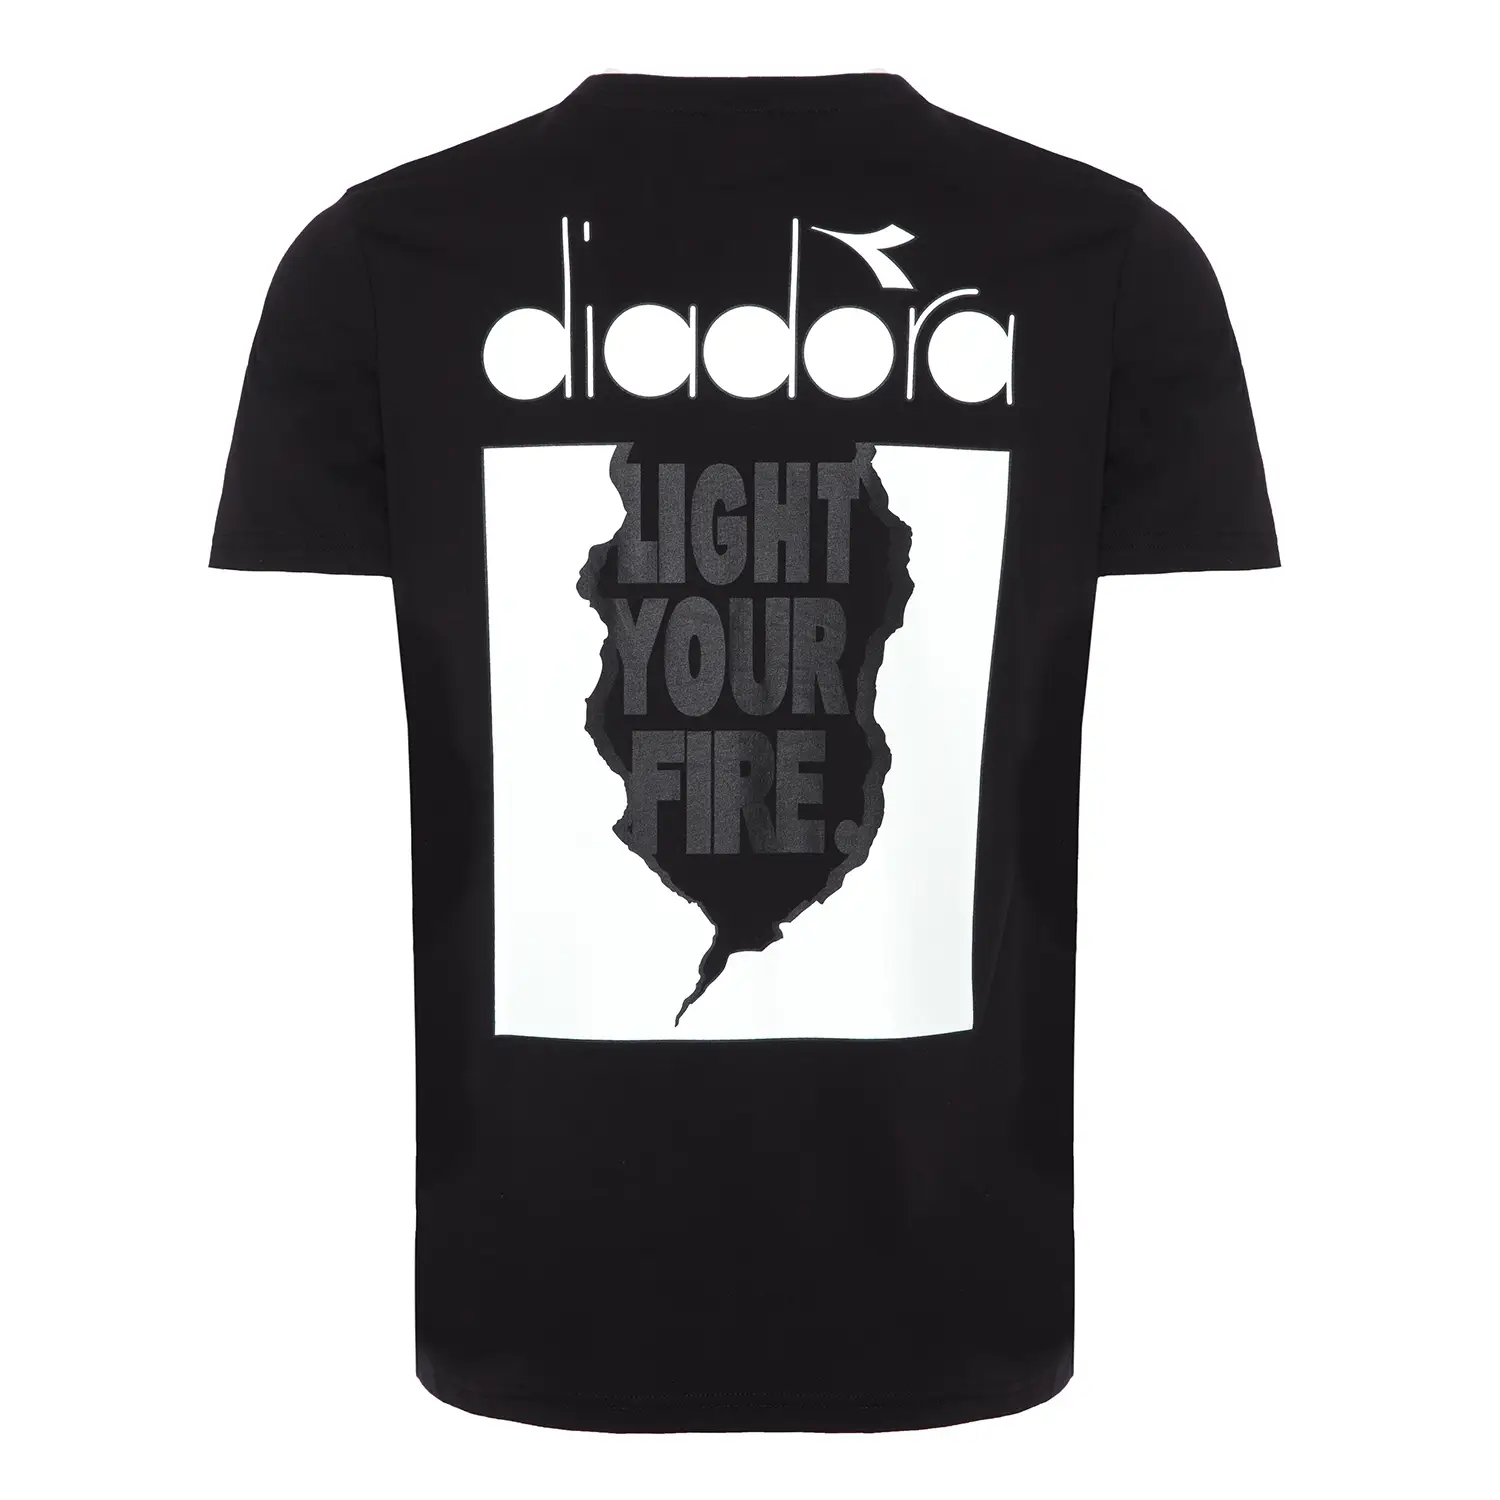 Diadora Ss T-shirt Light Your Fire Siyah Erkek Tişört - 502.175837-80013